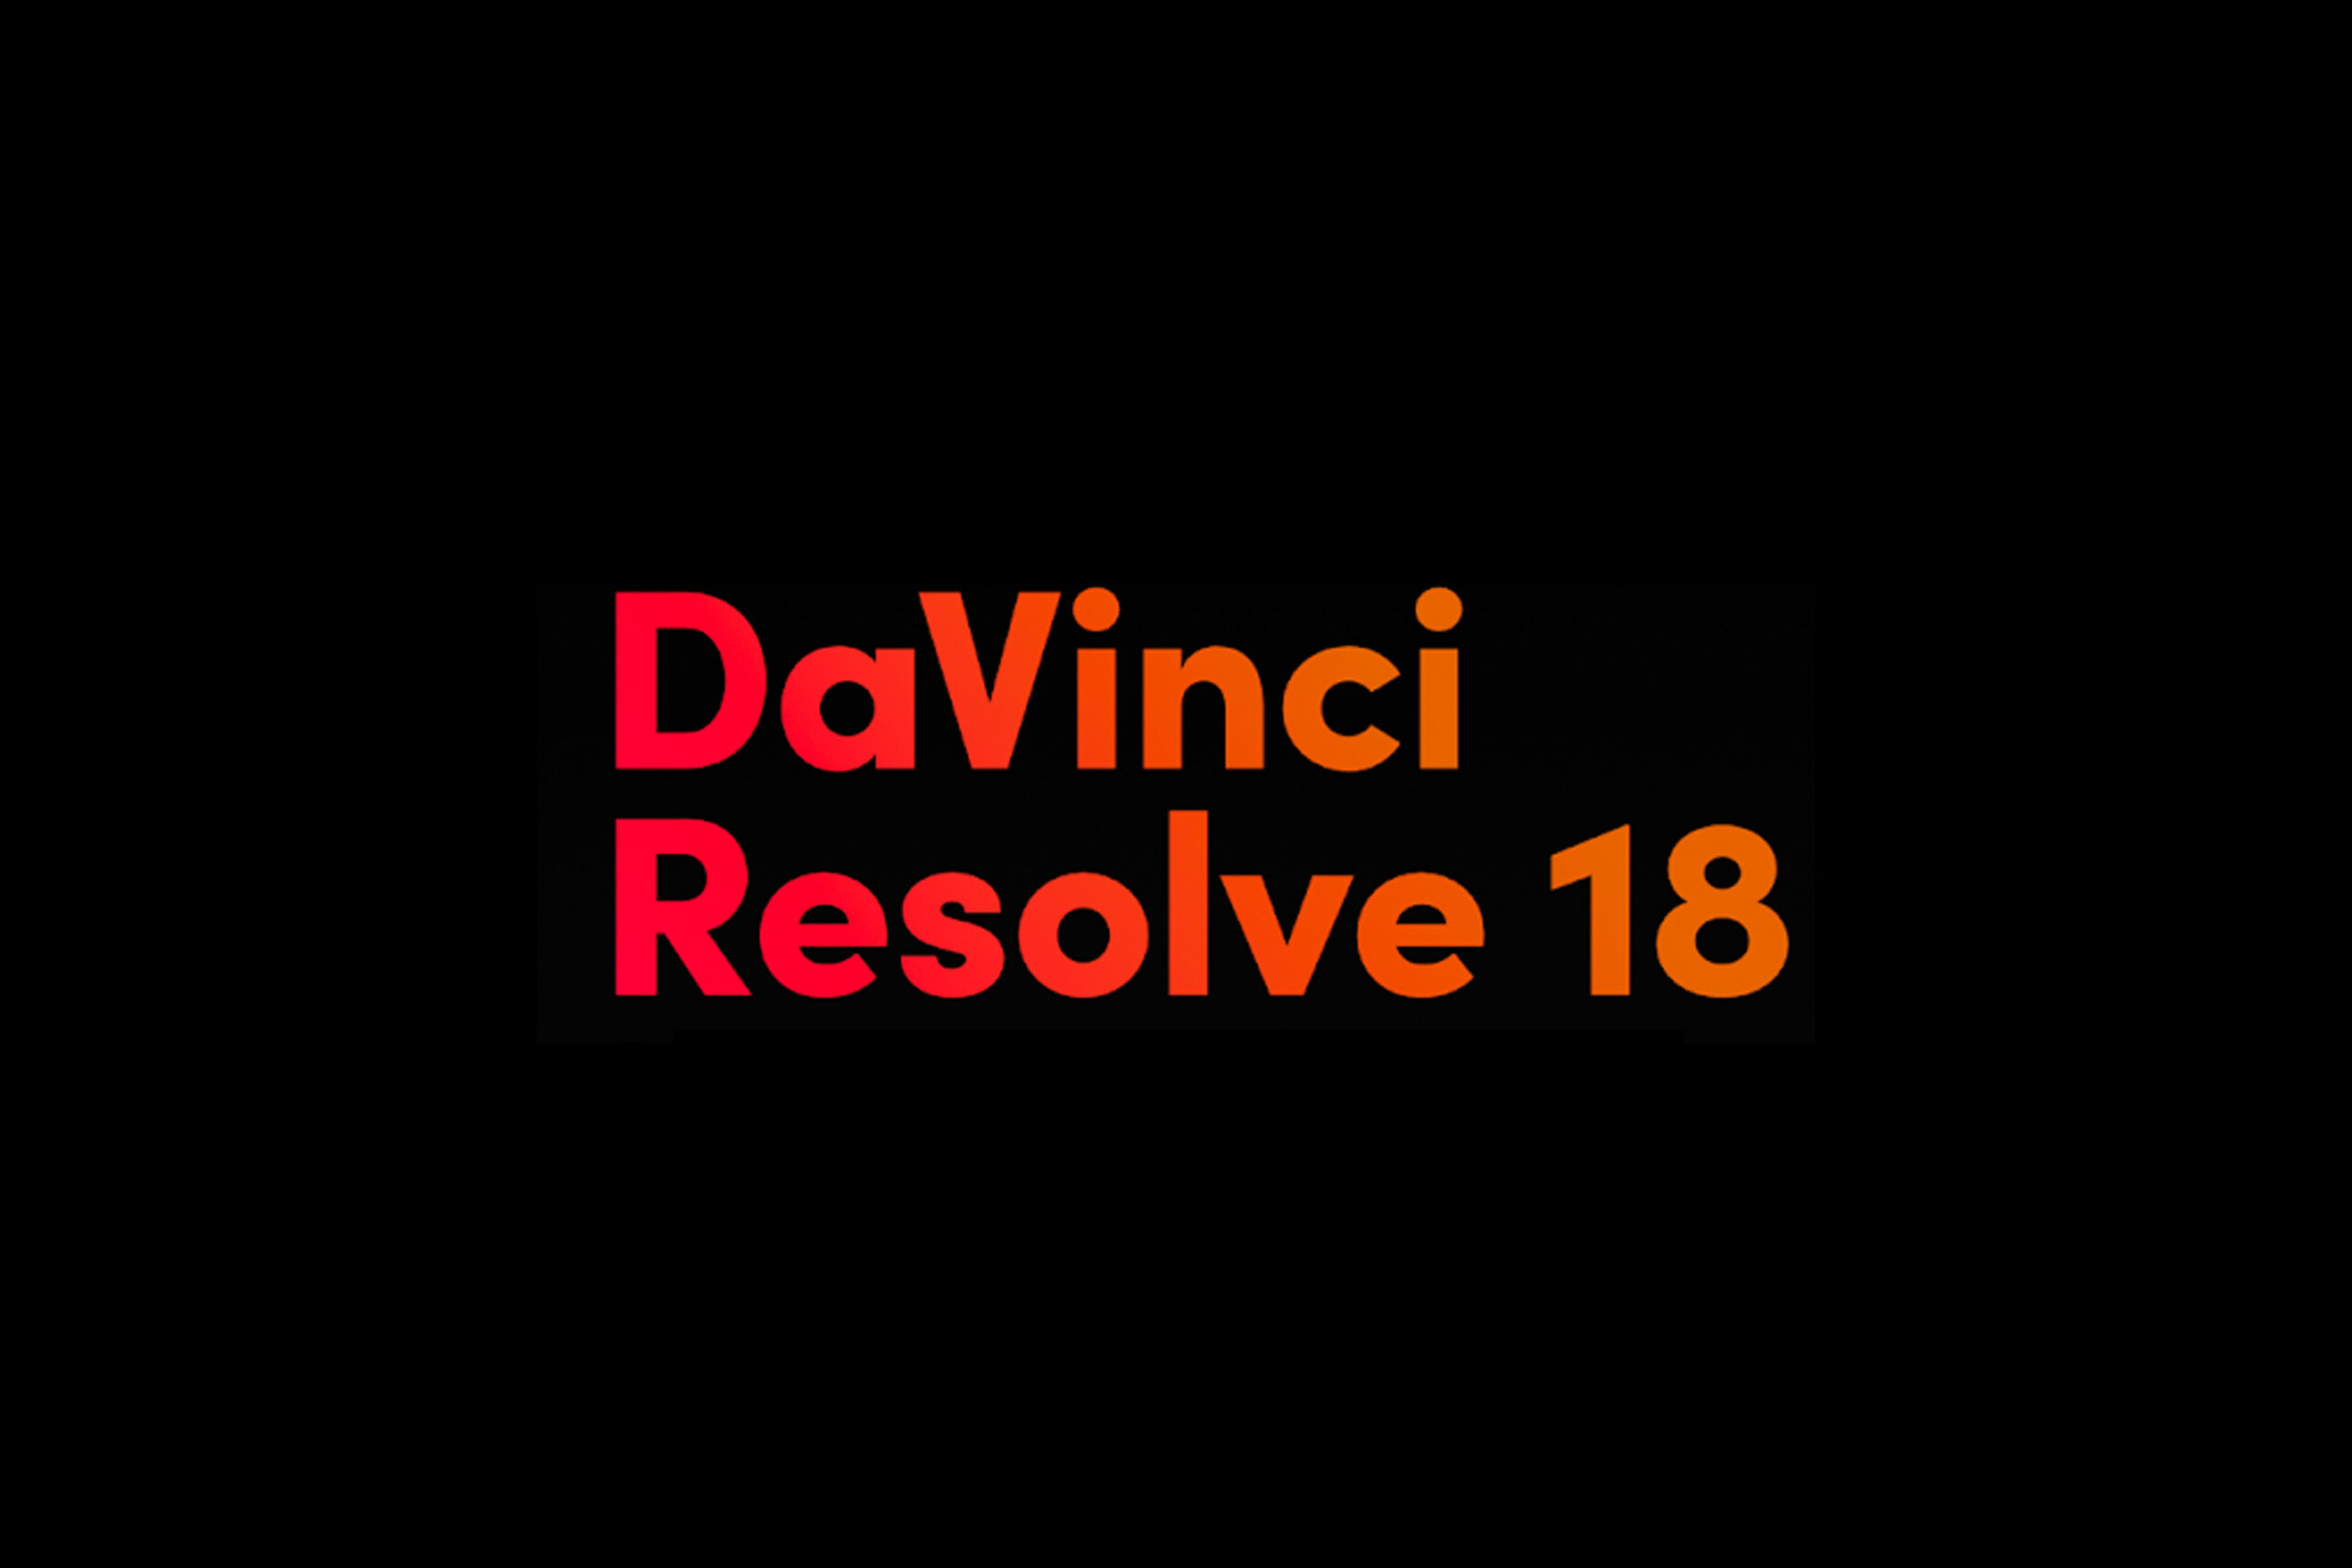 davinci resolve 18.6.2